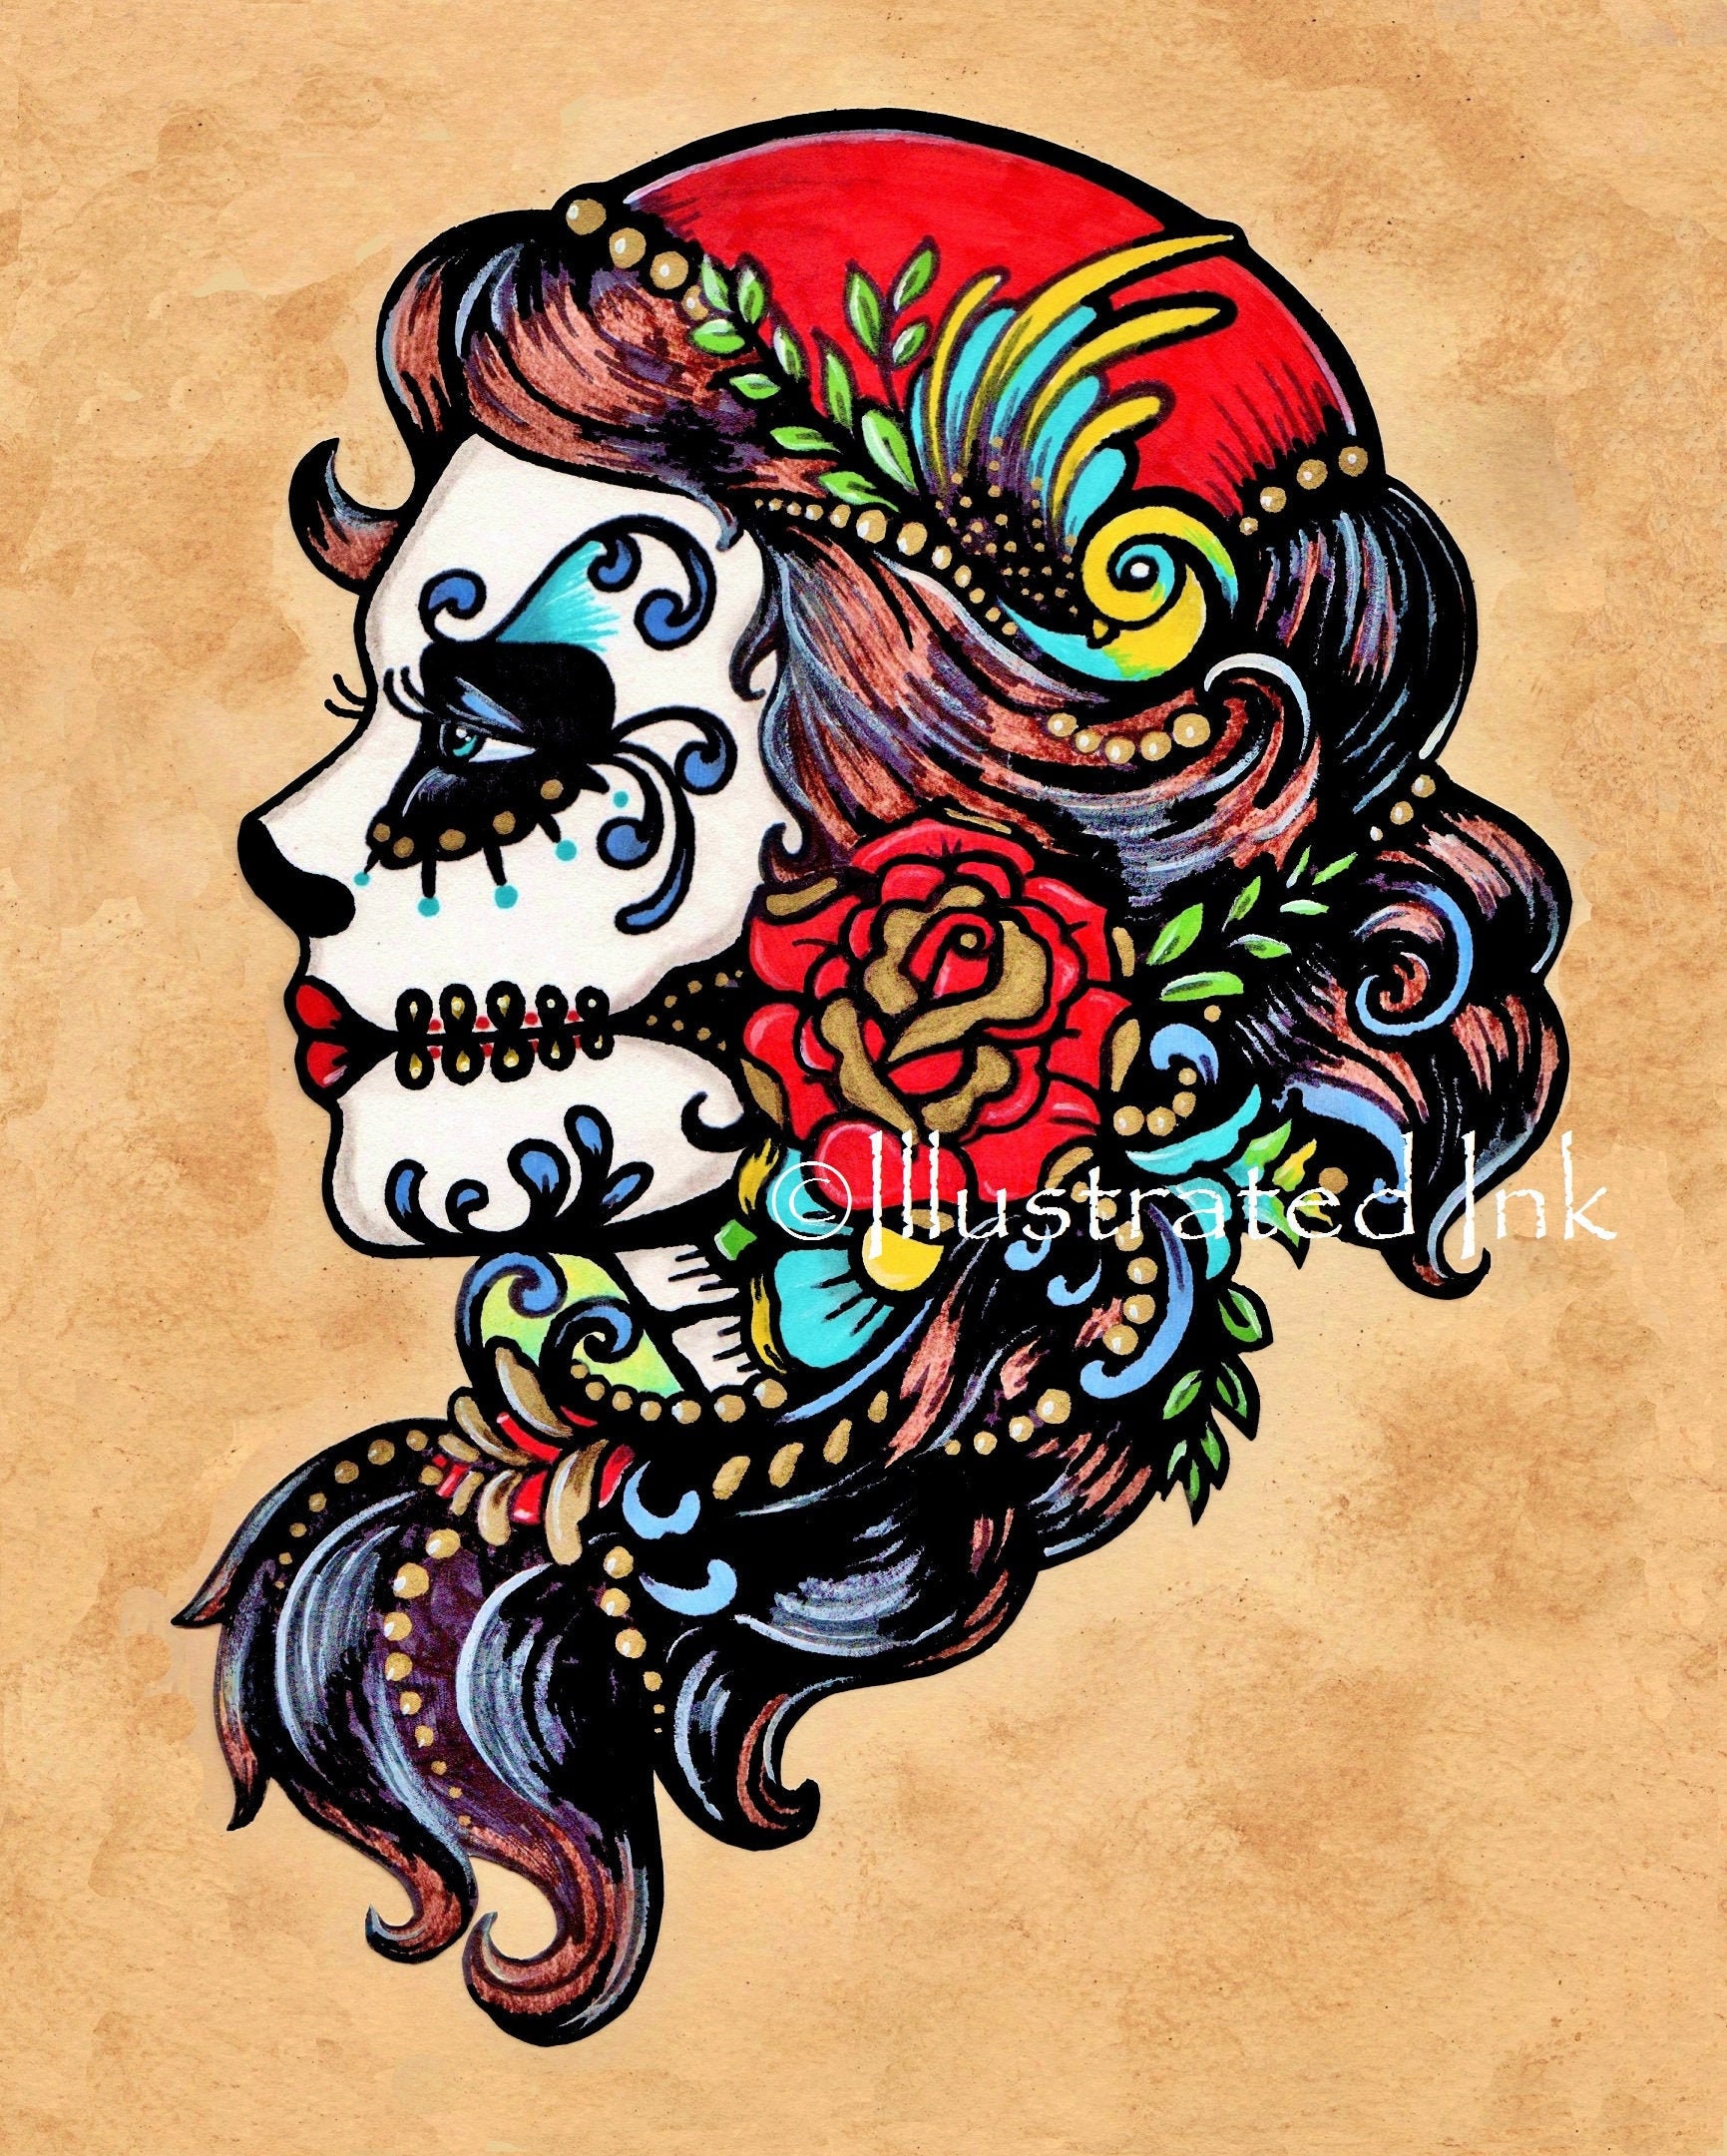 Estereotipo Pobreza extrema seno Day of the Dead Gypsy Tattoo Art Print Dia De Los Muertos - Etsy